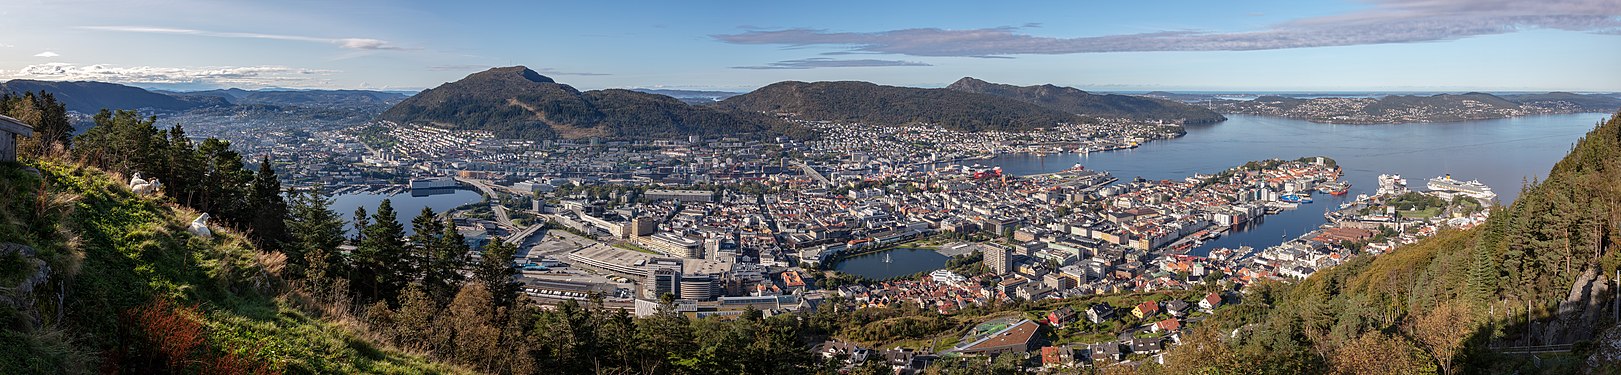 View of Bergen from Mount Fløyen, Norway.